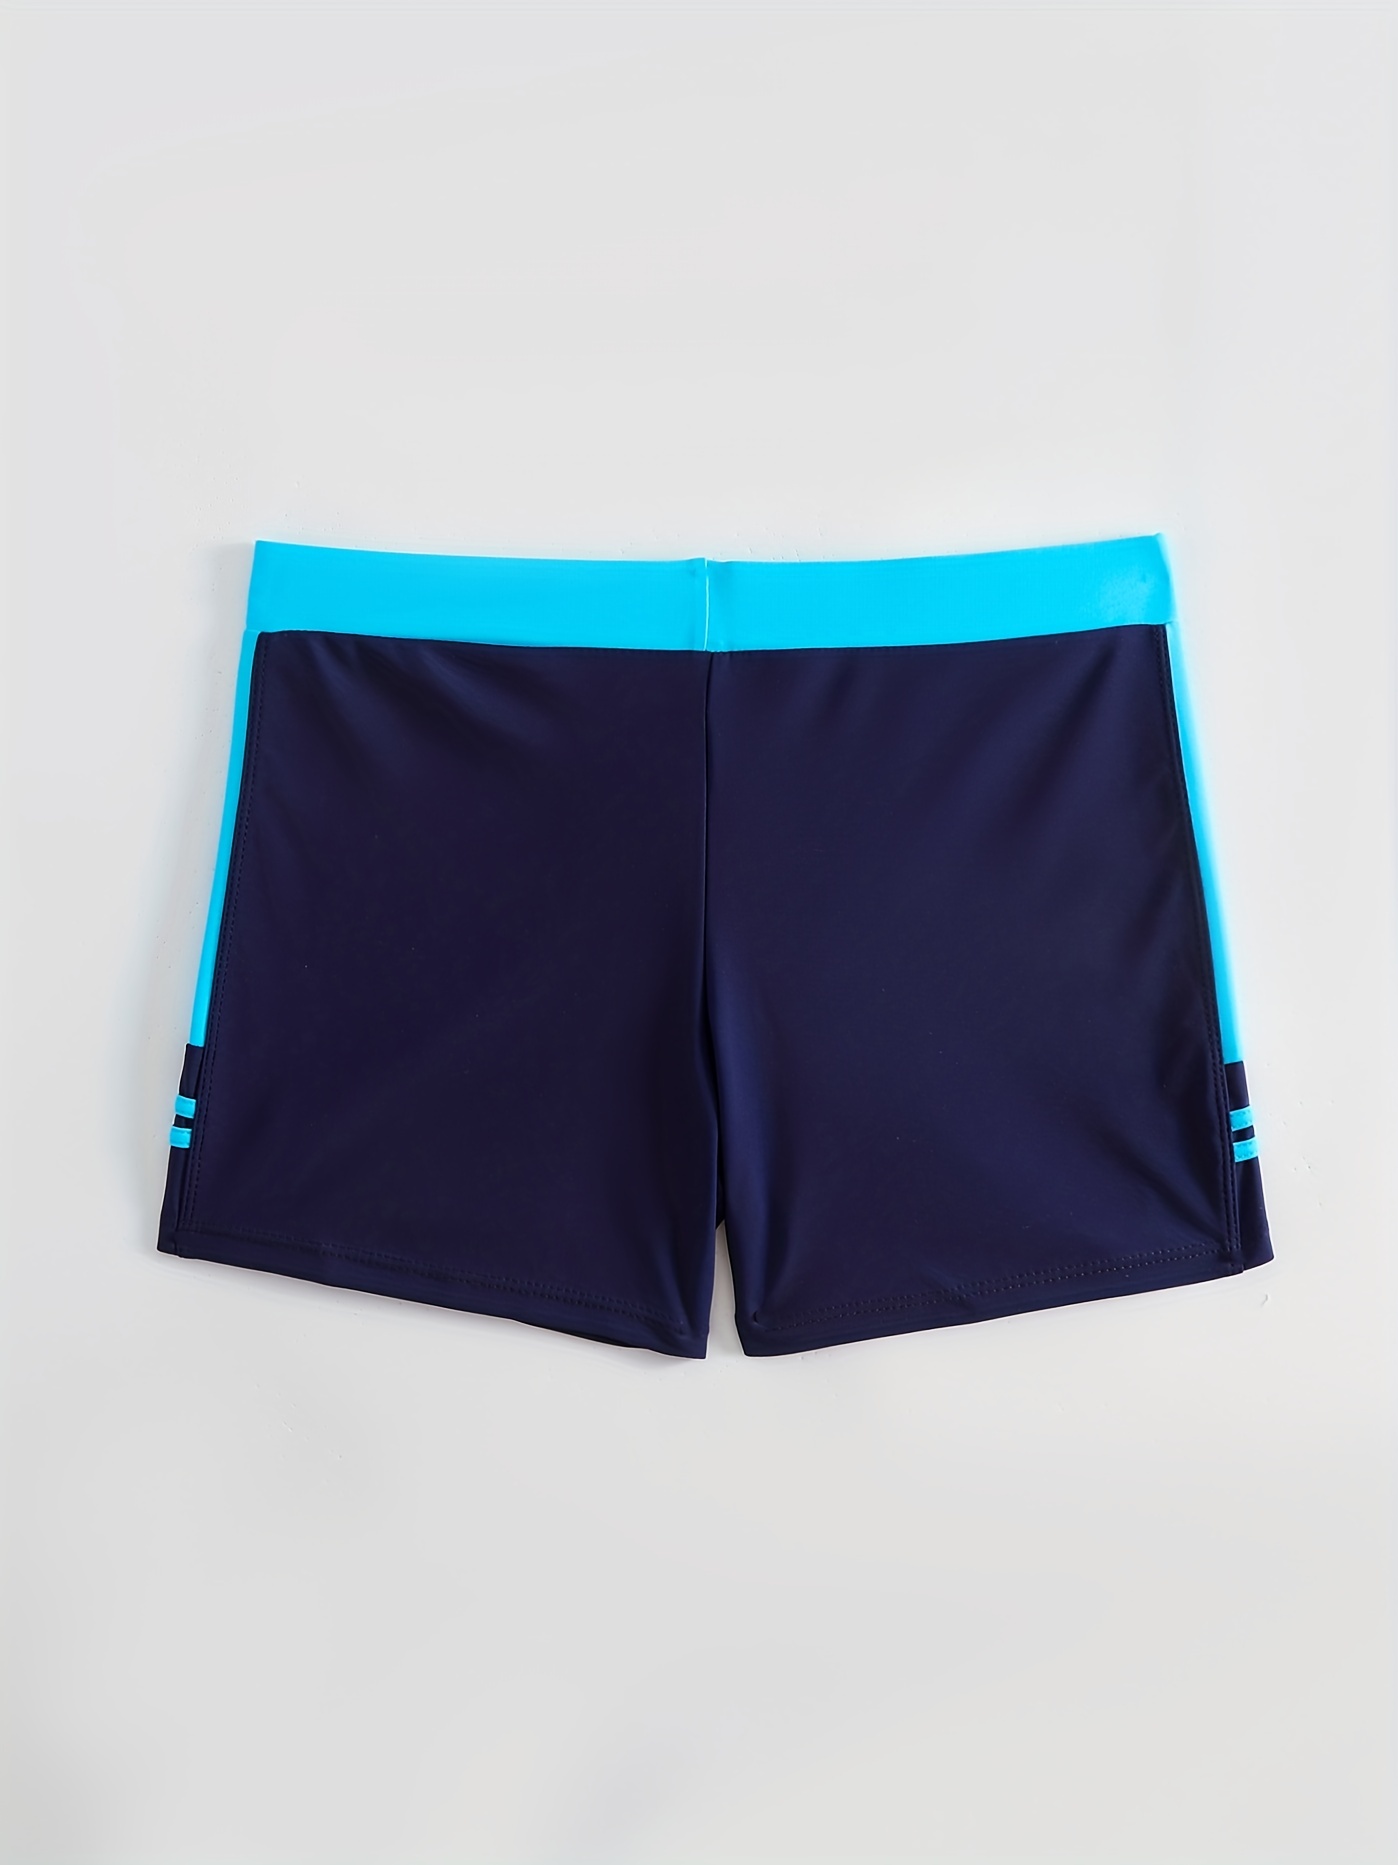 Bañadores de Natación, Pantalones Cortos de Hombres, Bermudas